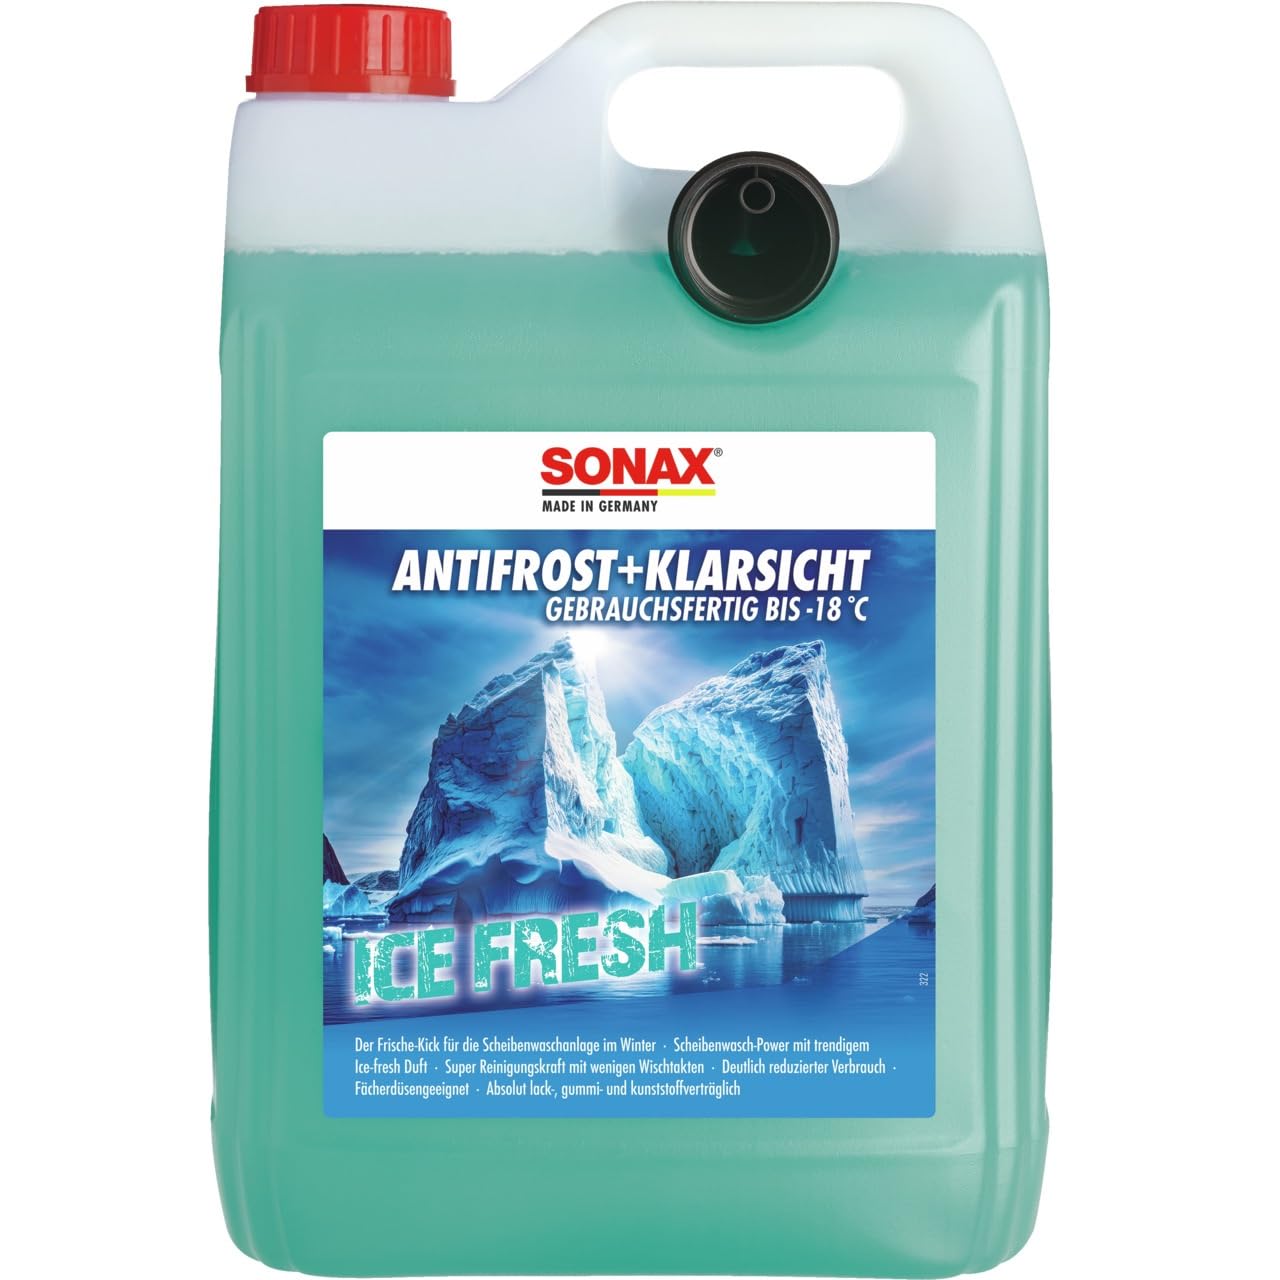 SONAX AntiFrost+KlarSicht IceFresh Gebrauchsfertig bis -18 °C (5 Liter) schneller, schlierenfreier & effektiver Scheibenreiniger für den Winter | Art-Nr. 01335050 von SONAX